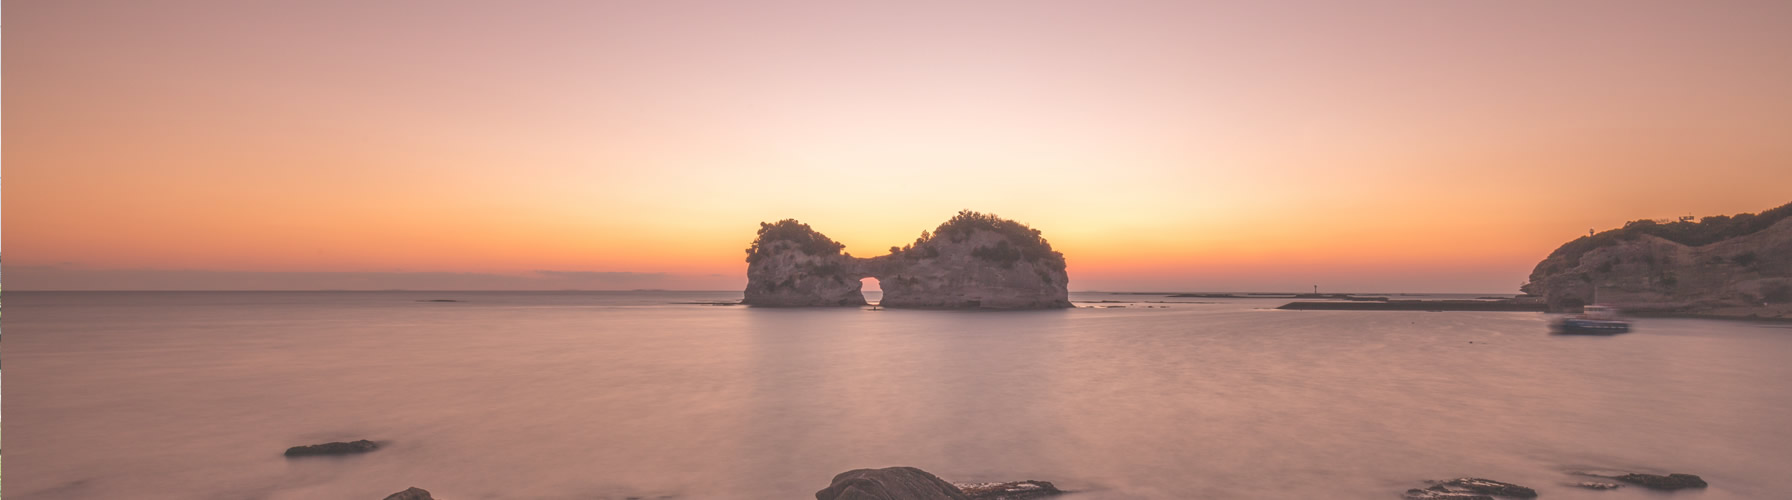 夕陽をバックに、海に浮かぶ石垣の写真